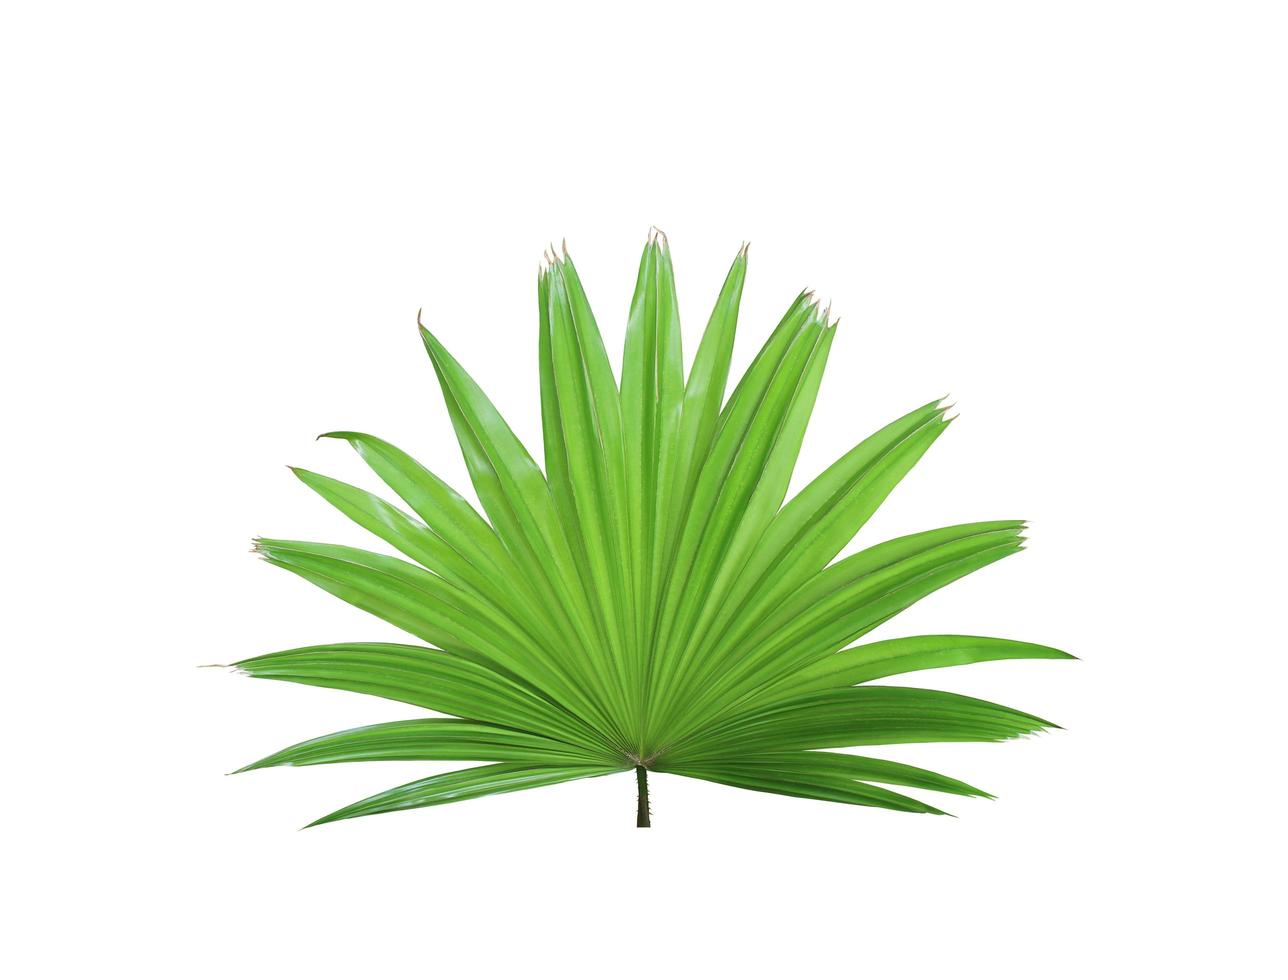 árvore de folha de palmeira do moinho de vento chinês verde tropical isolada no fundo branco foto